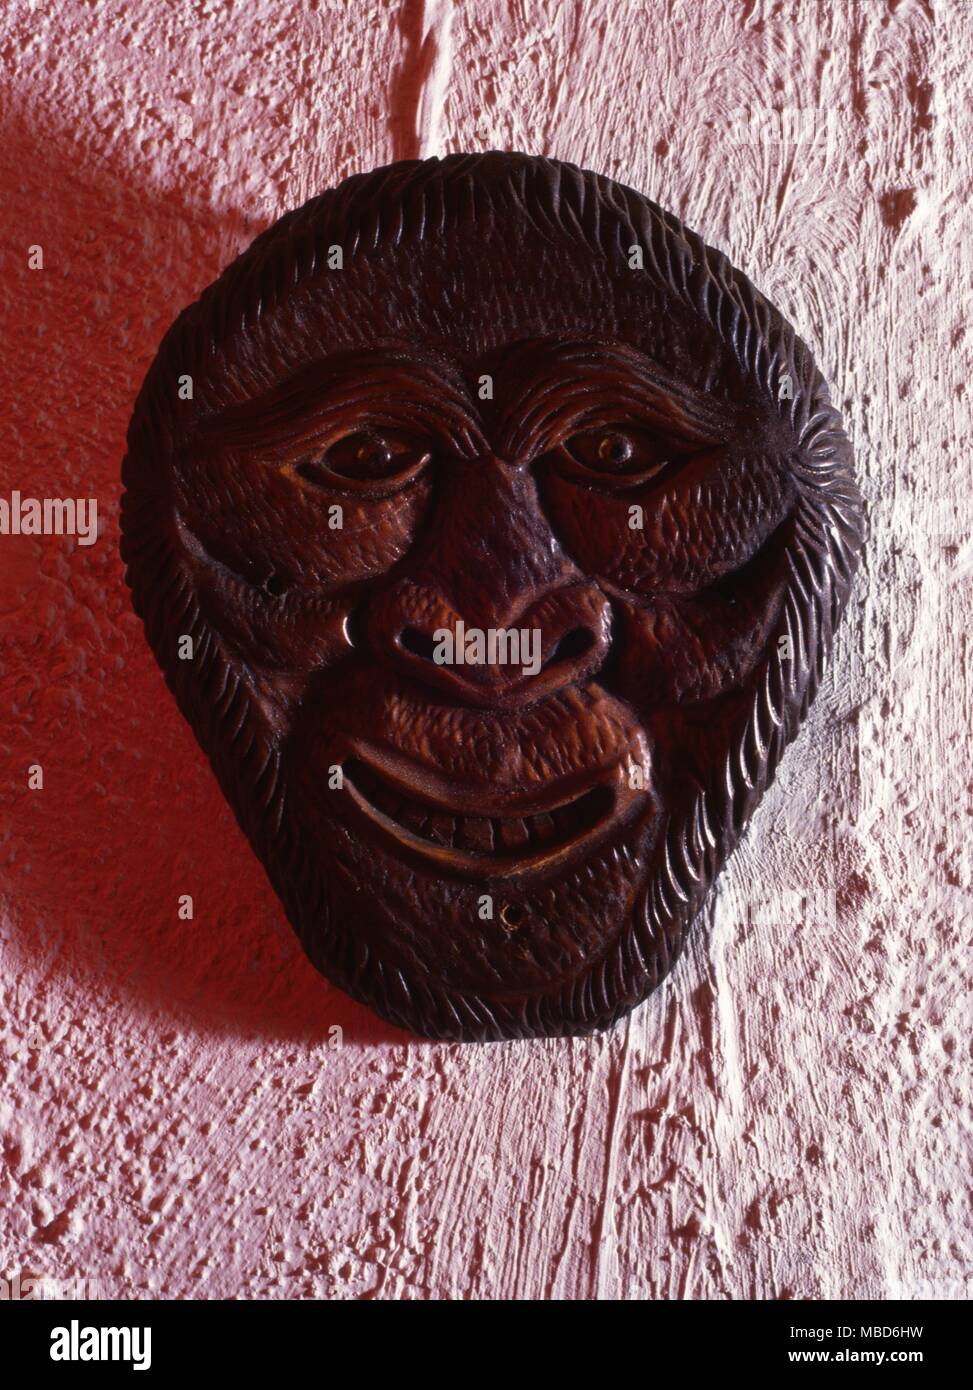 Cara fask demoníaca de madera usadas en rituales wiccan hasta mediados del siglo XX. Foto de stock